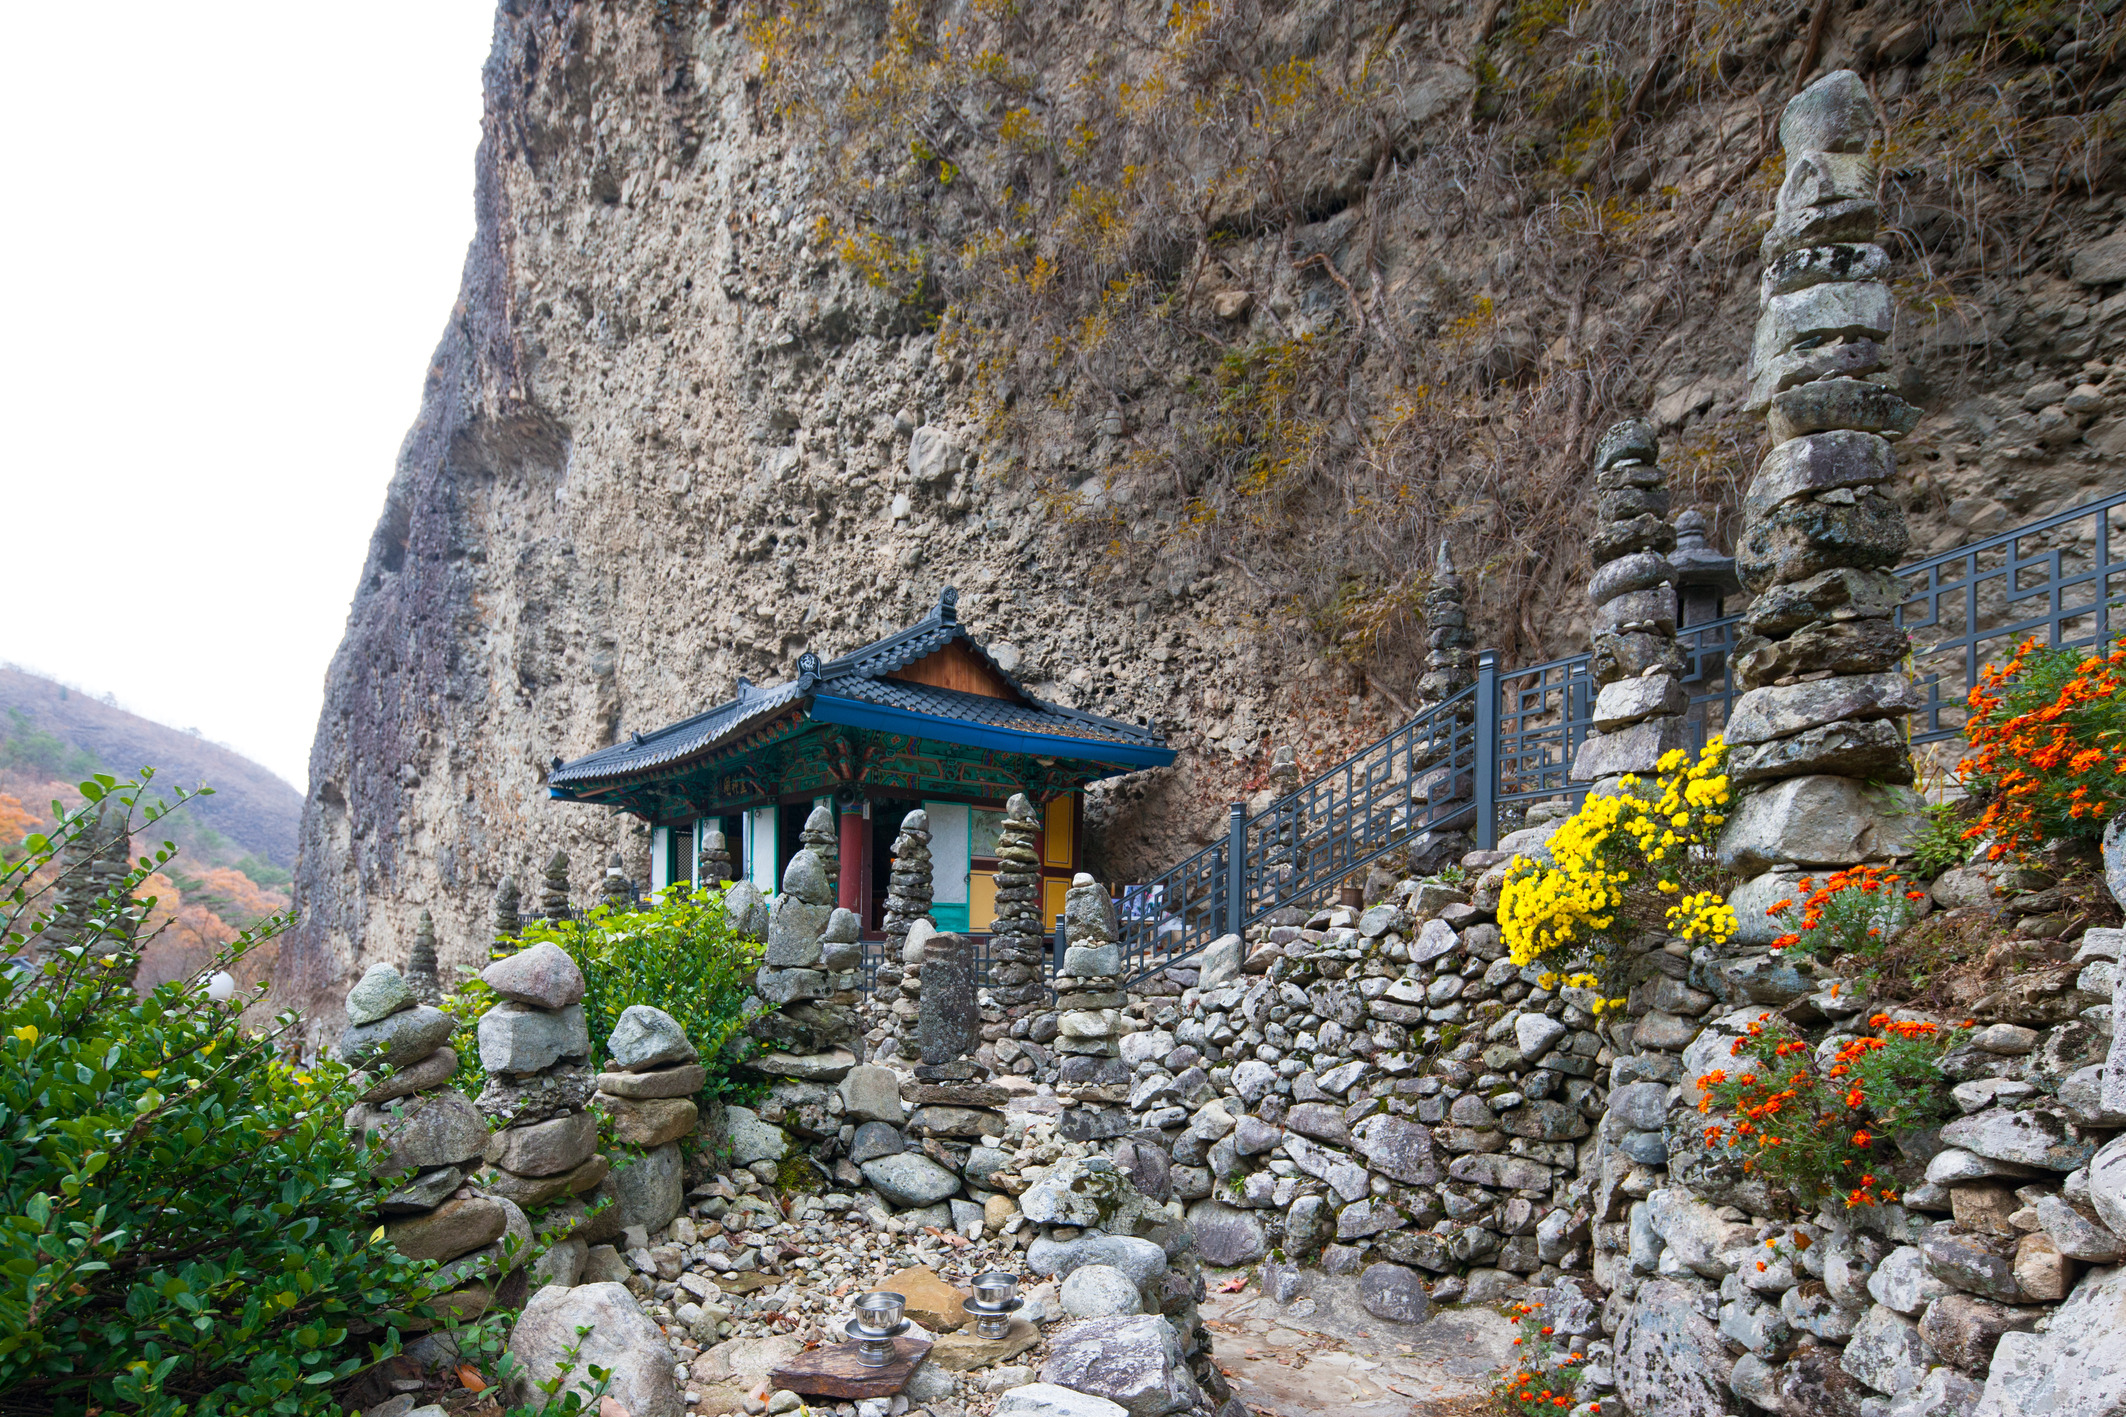 Los doltap pueden observarse en su mayoría en las montañas, cementerios y a los alrededores de los templos budistas, ya que la tradición de hacer doltap proviene del budismo. En la foto tomada en el templo Tapsa en el monte Maisan, en el condado de Jinan-gun, provincia de Jeollanam-do se muestran varios doltap alrededor del templo.